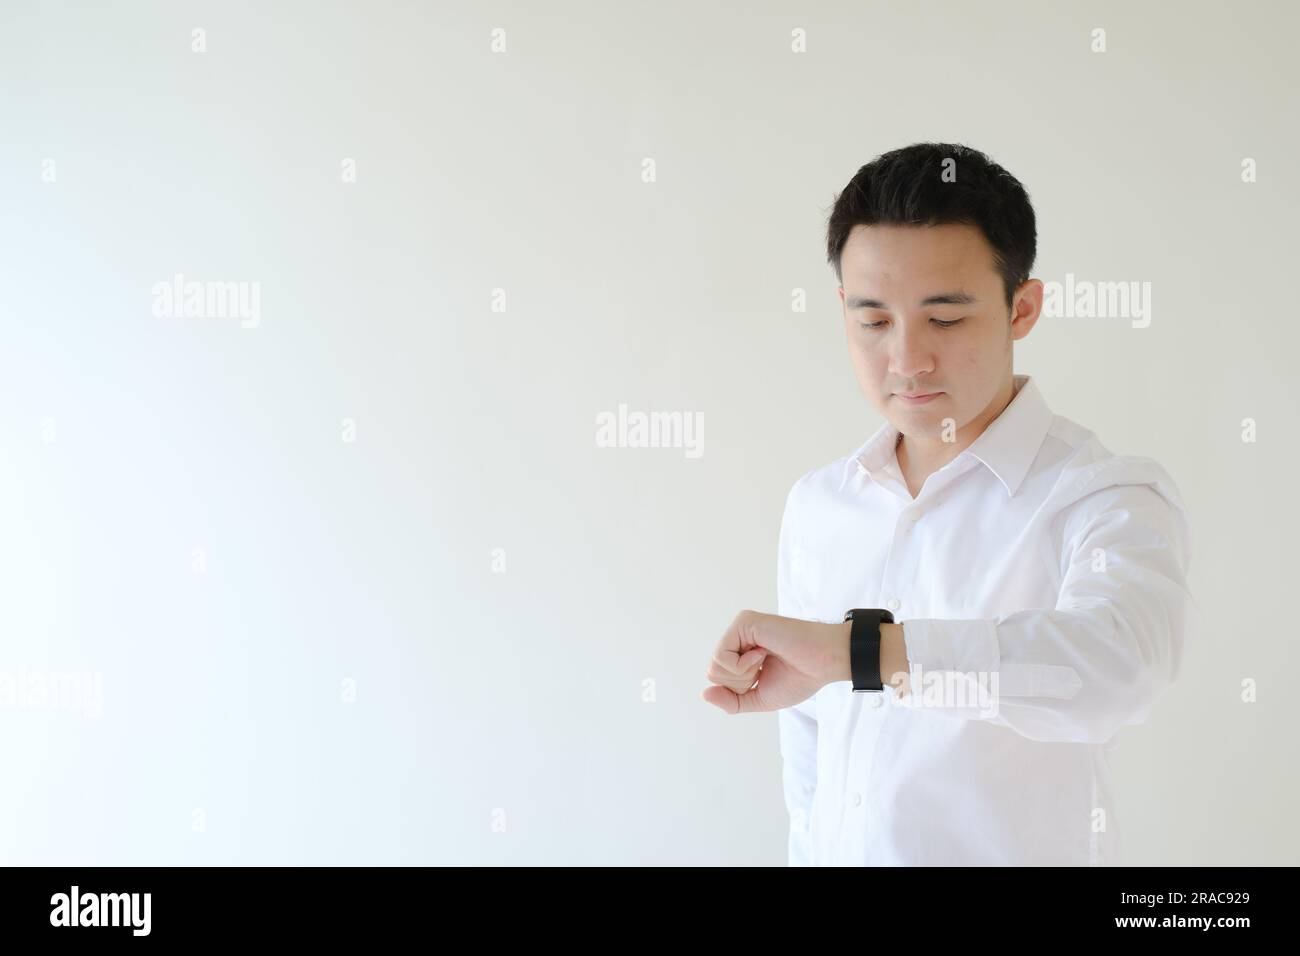 Ein junger asiatischer Mann mit weißem Hemd schaut auf seine Uhr. Isolierter weißer Hintergrund. Stockfoto